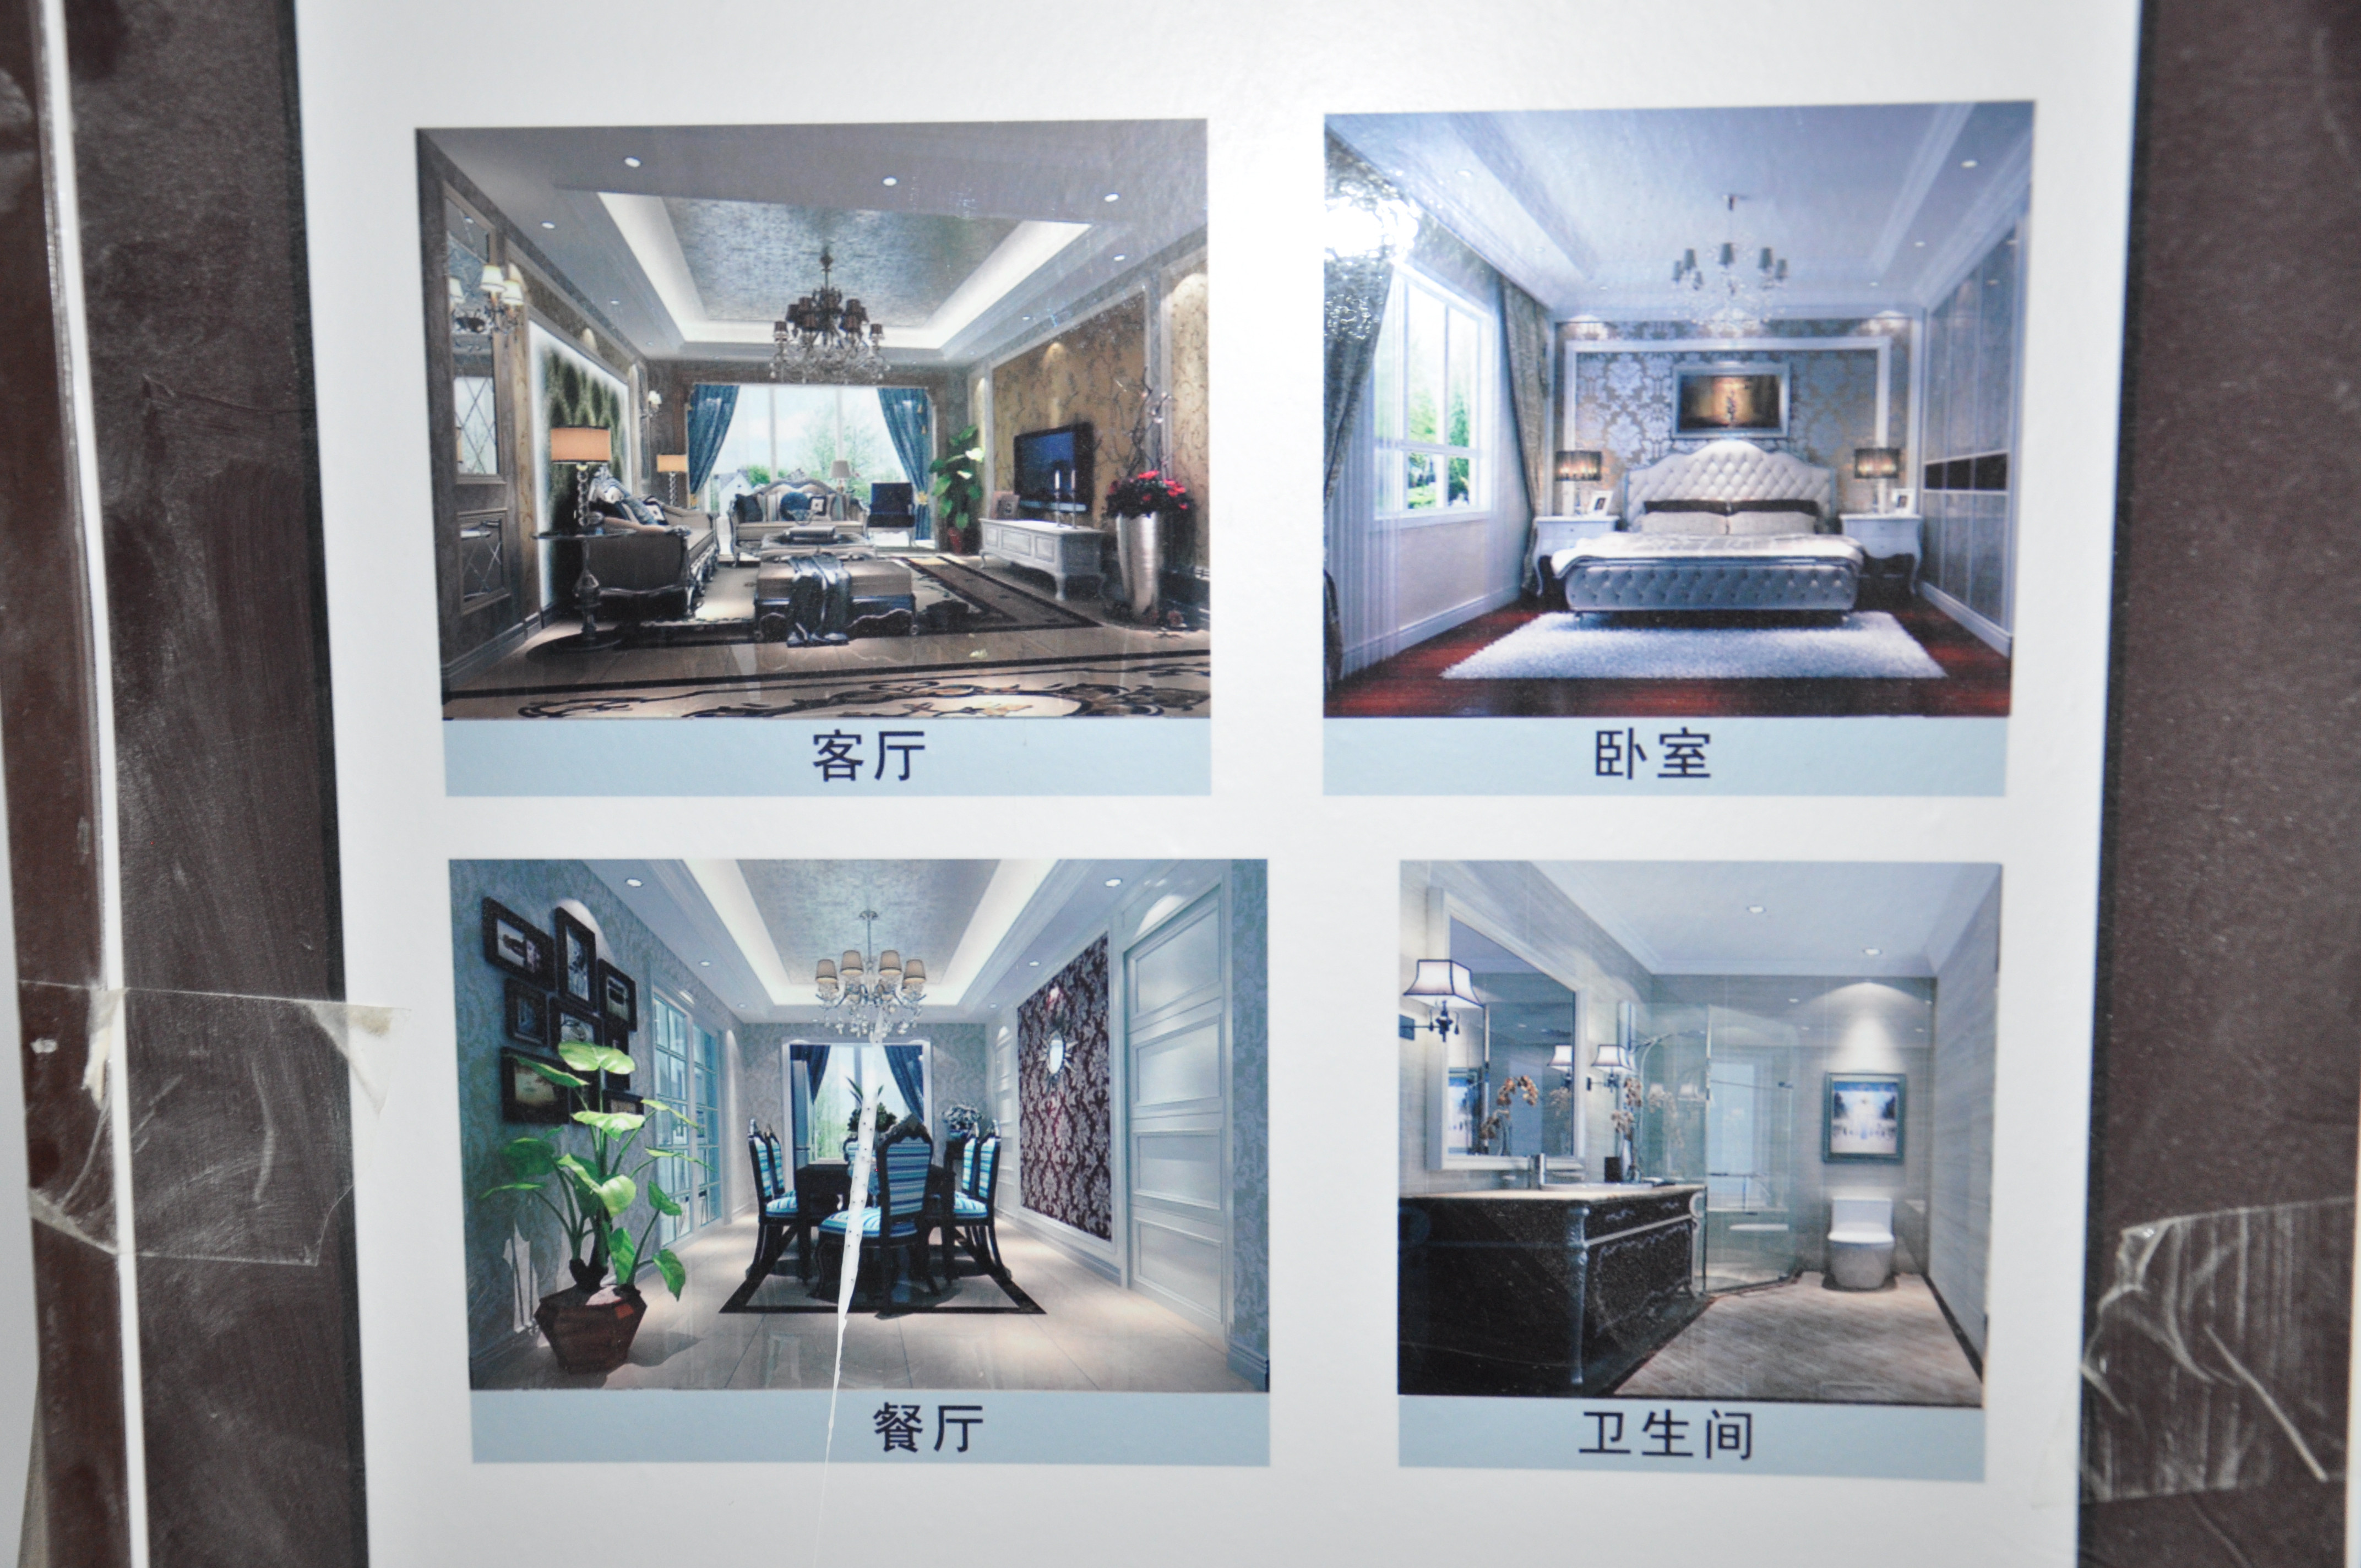 简约 美式 现代 高度国际 二居 三居 公寓 白领 80后 户型图图片来自北京高度国际装饰设计在天润福熙大道在建施工工地的分享